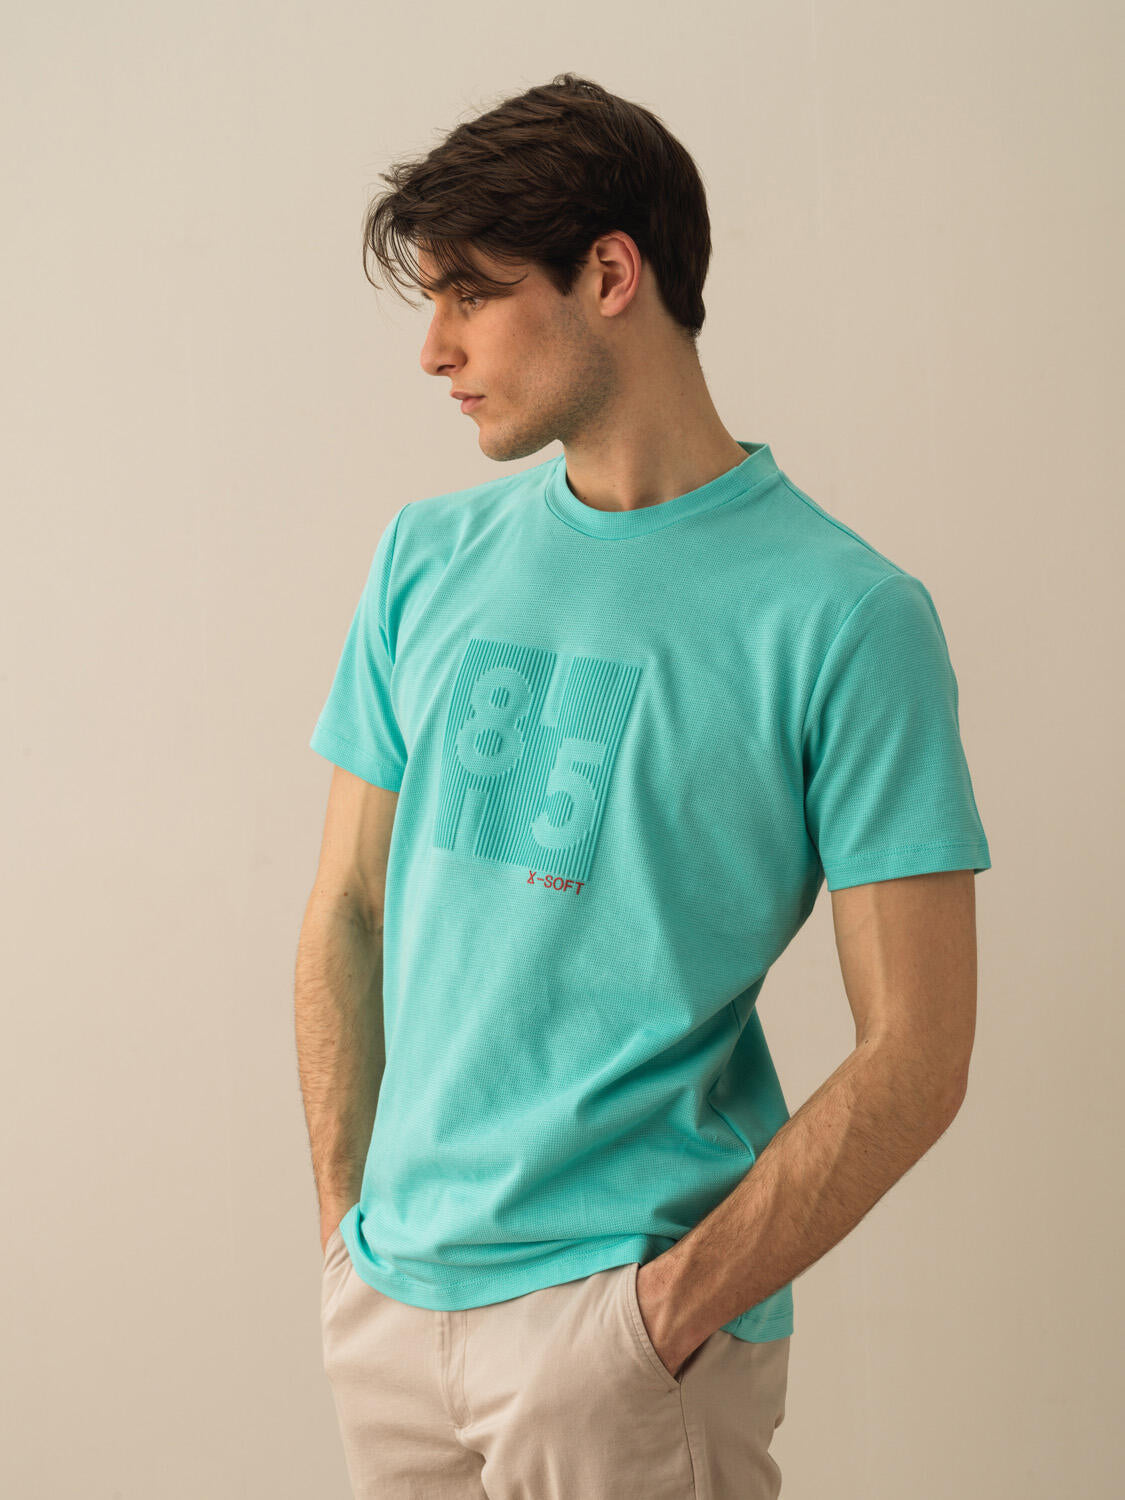 Men Turquoise Reflective T-shirt With Unique Design